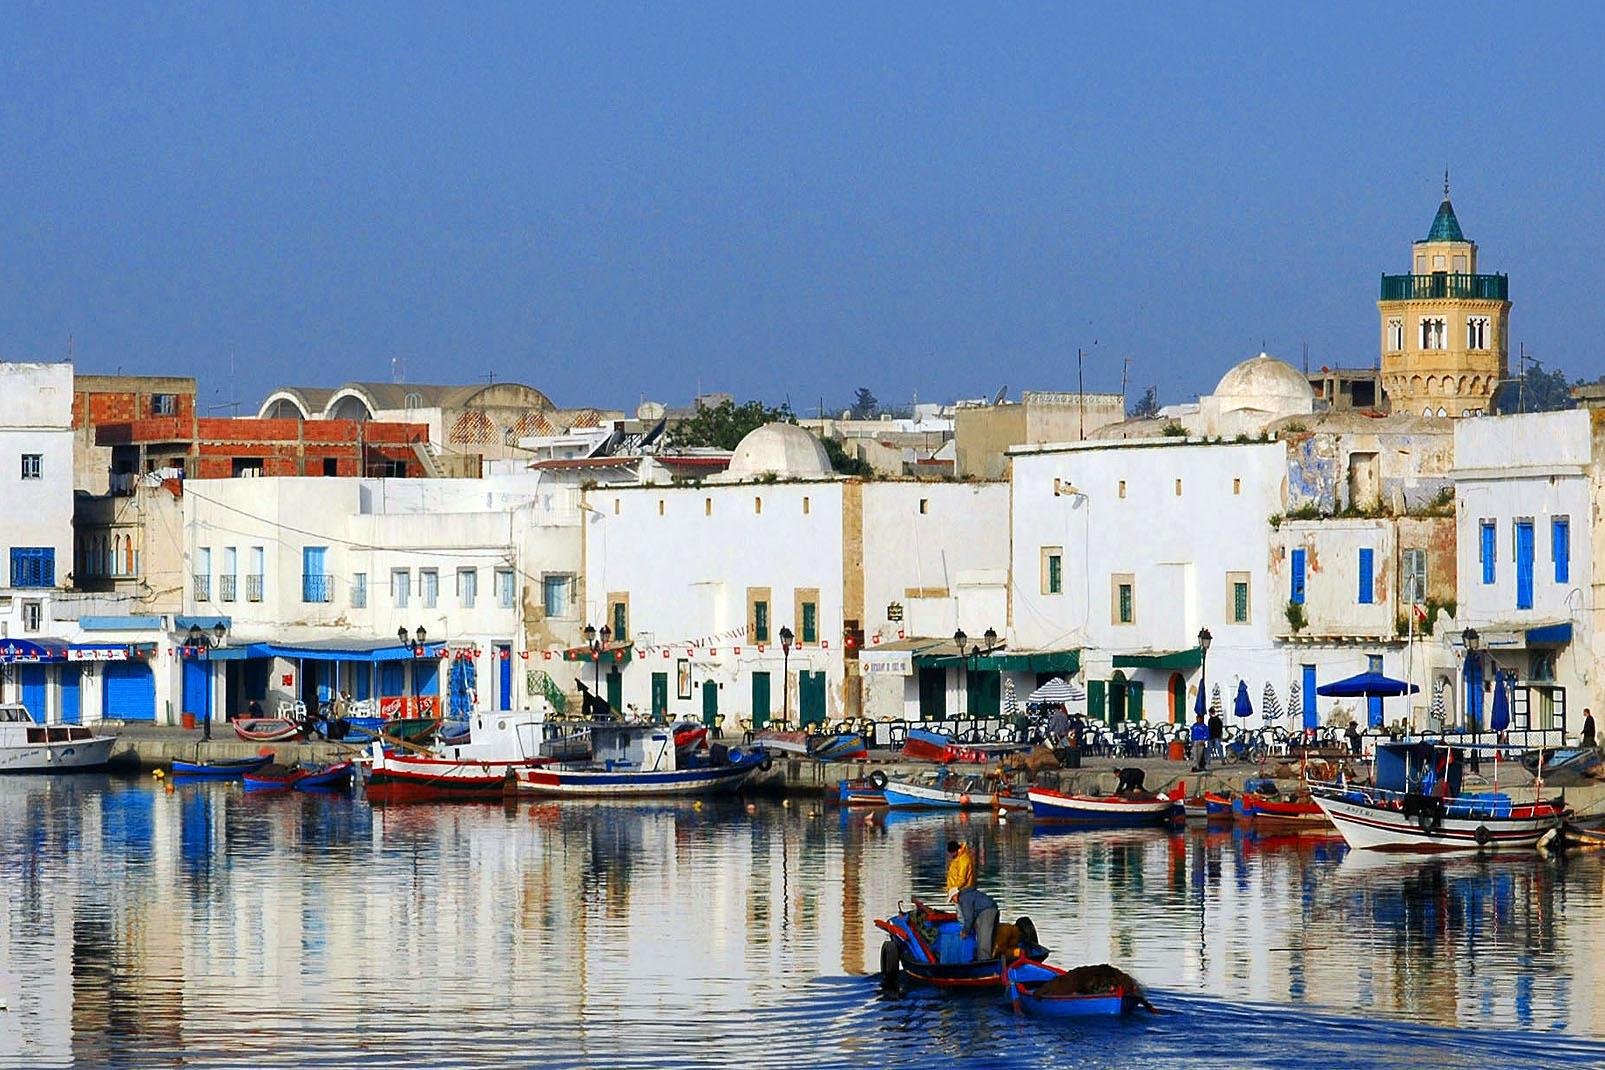 Située sur la côte nord tunisienne, la ville de Bizerte, relativement méconnue, mérite pourtant une visite. On apprécie son charmant port de pêche bordé de maisons ocre, où mouillent des barques colorées et sa plage bordée d'hôtels tranquille. A proximité, le cap Blanc, promontoire formé de collines blanchâtres s'enfonçant dans la mer constitue la pointe la plus septentrionale du continent africain....